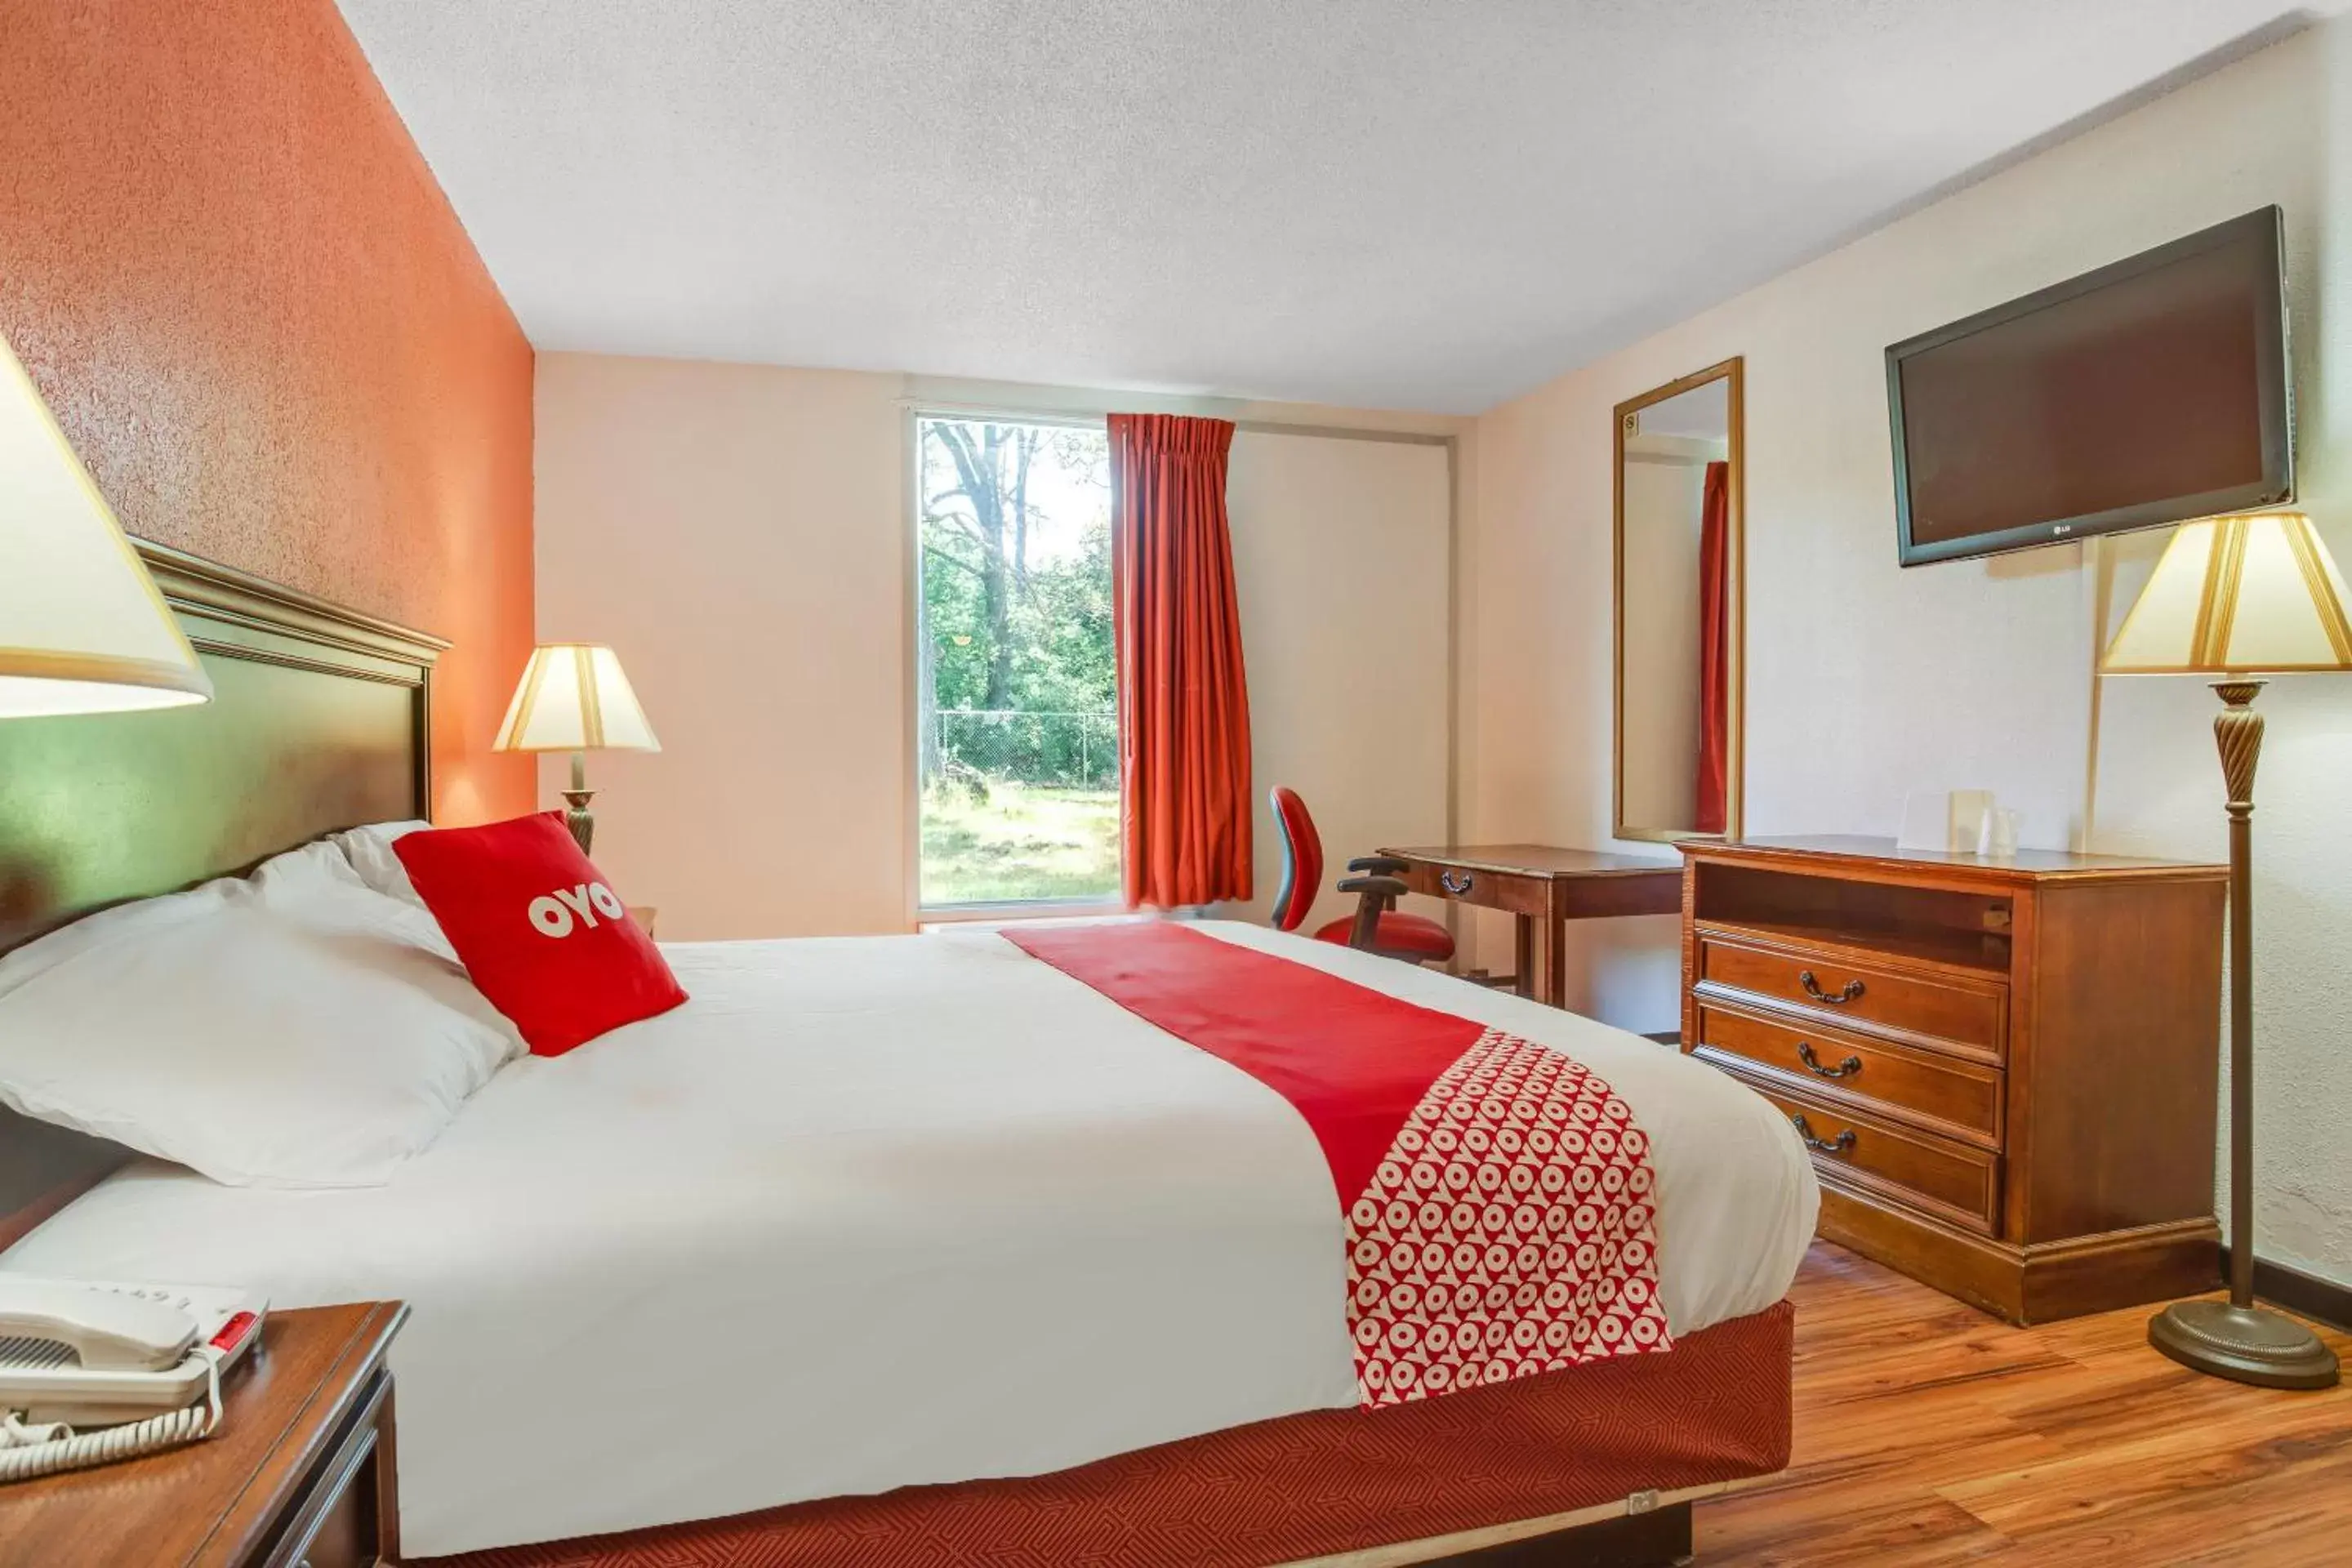 Bedroom, Room Photo in OYO Hotel Mona Lake Muskegon